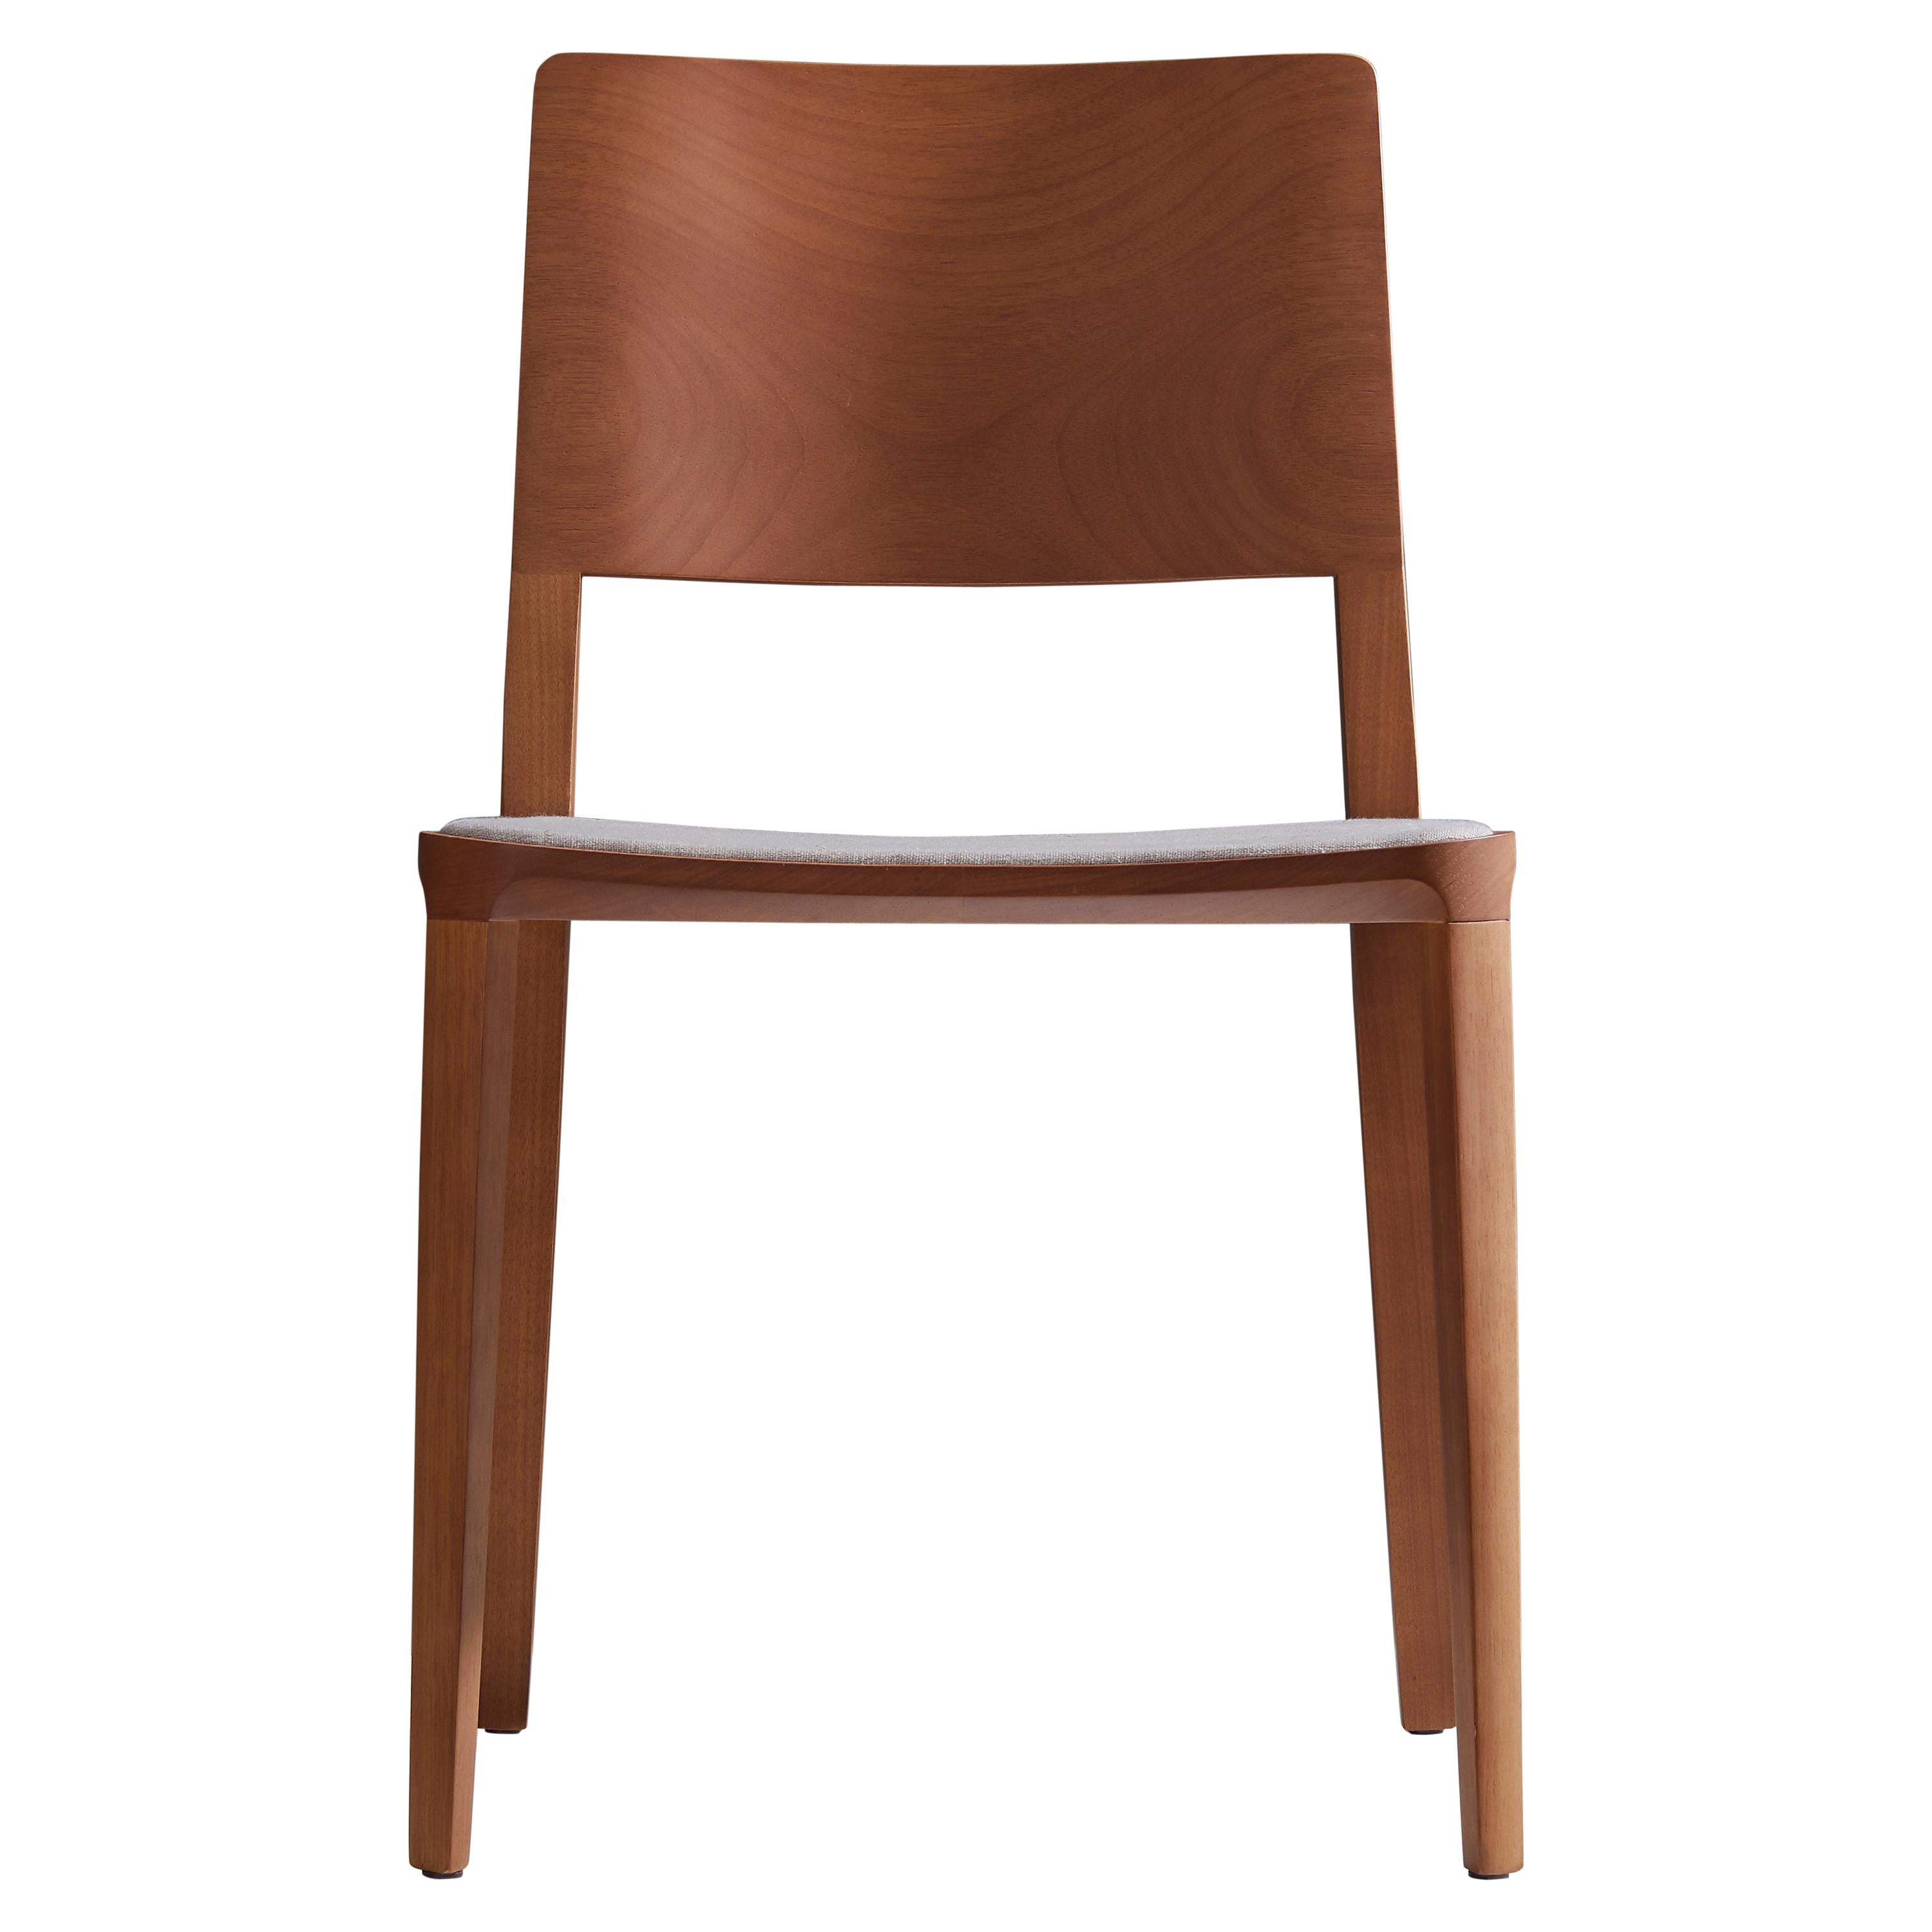 Collection de chaises Evo.

Notre collection Evo est basée sur la fusion harmonique entre les formes géométriques et l'interprétation moderne des archétypes du bois. 

Tous les éléments qui composent la chaise sont conçus avec précision pour